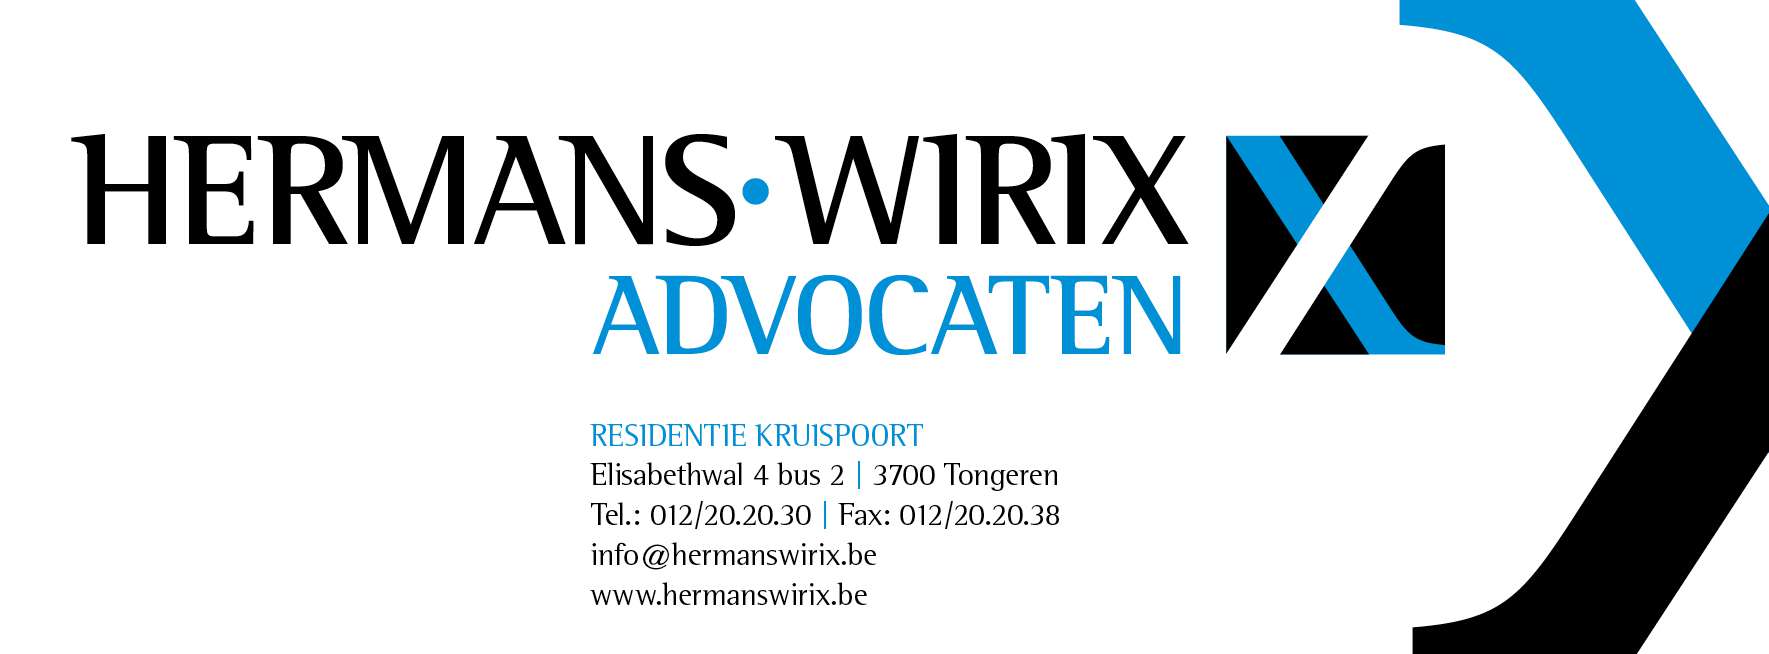 advocaten Spouwen Hermans-Wirix advocaten